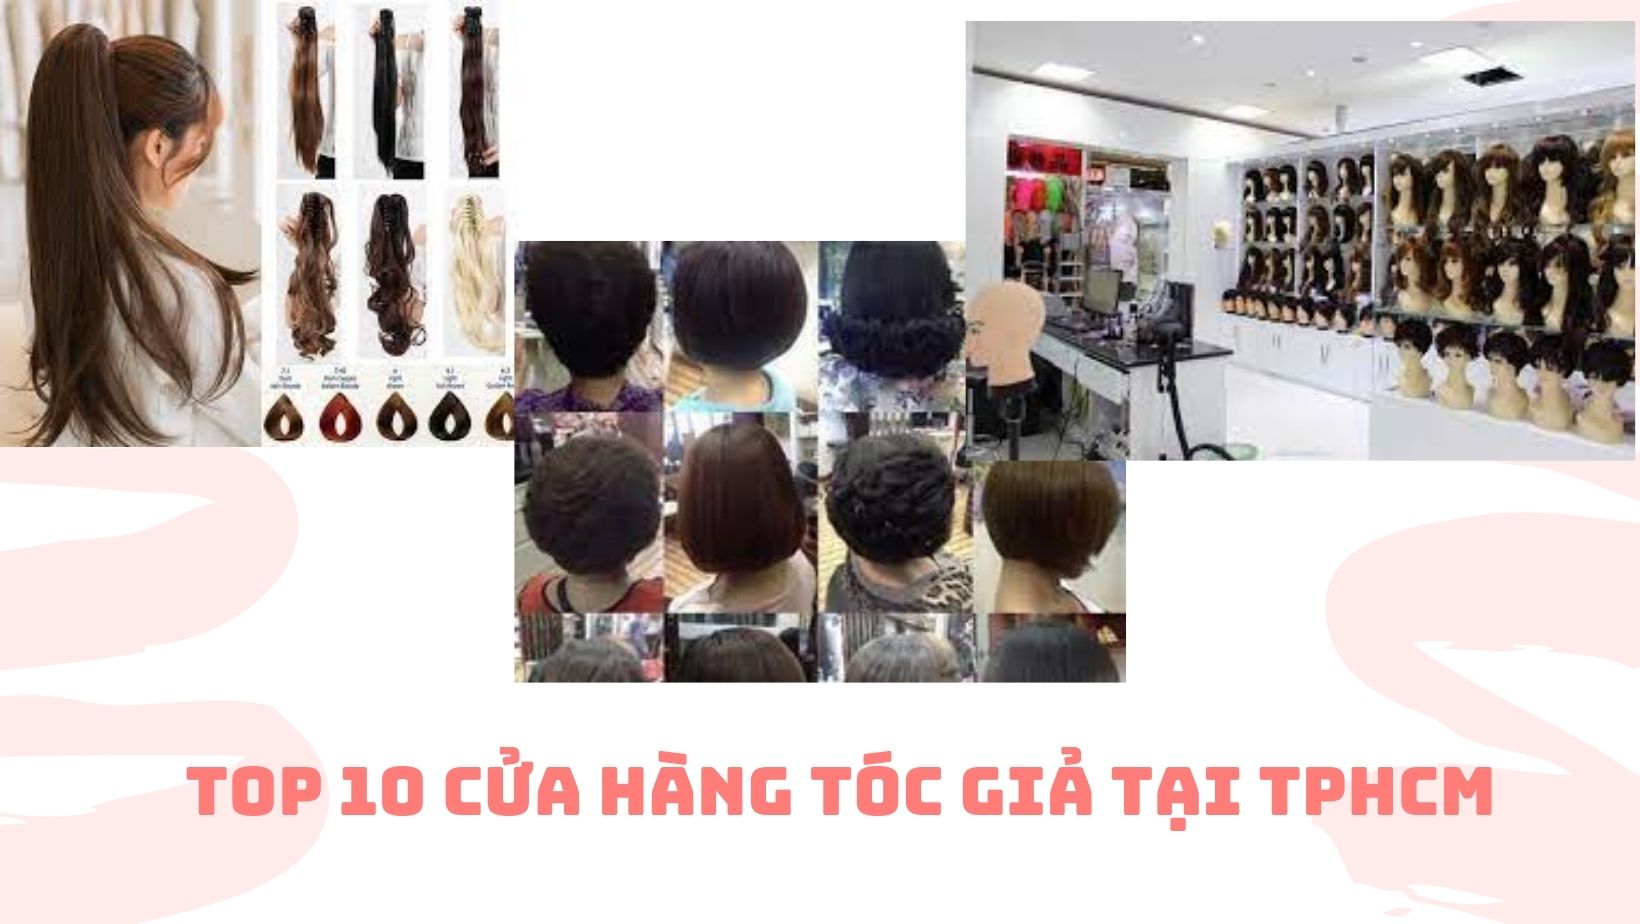 Tóc giả đẹp giá rẻ Hcm  Shop tóc giả bằng tóc thật hcm  Winavn